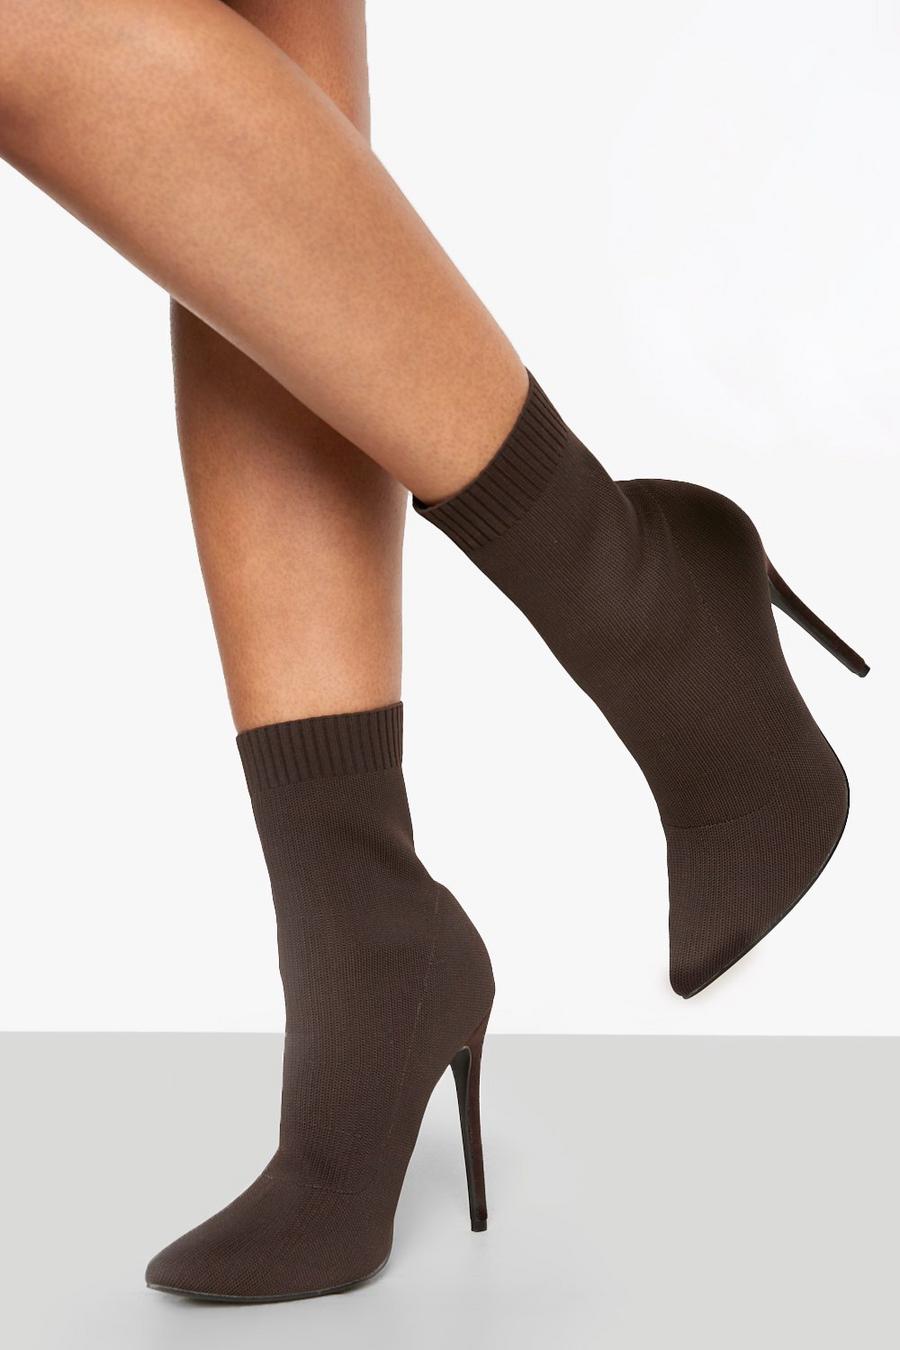 Botas calcetín de holgura ancha de tela con tacón de aguja, Chocolate marrón